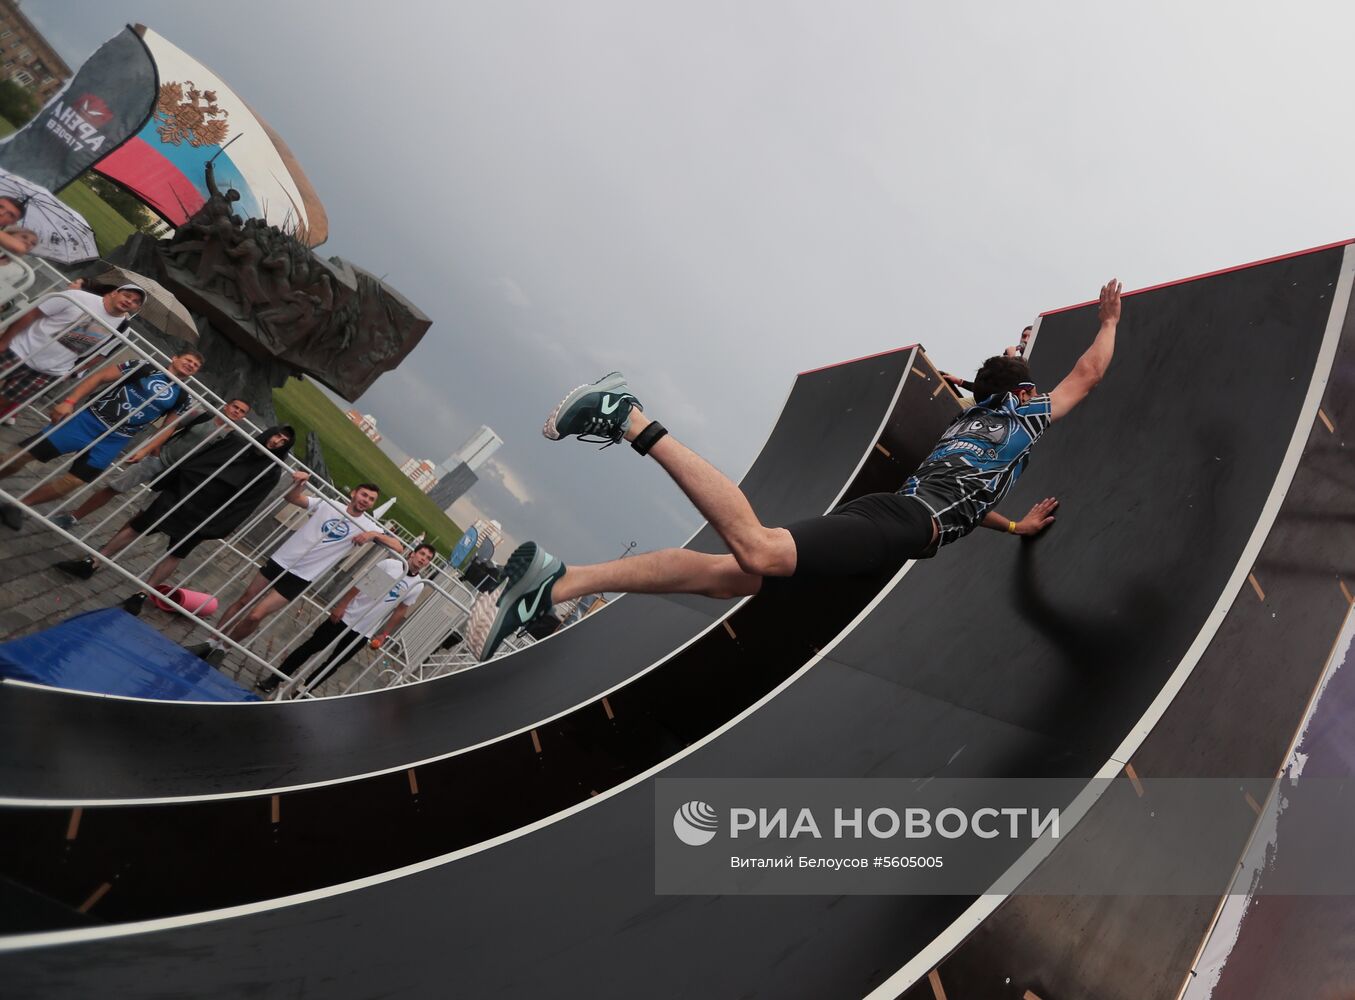 "Арена героев" в Парке Победы 